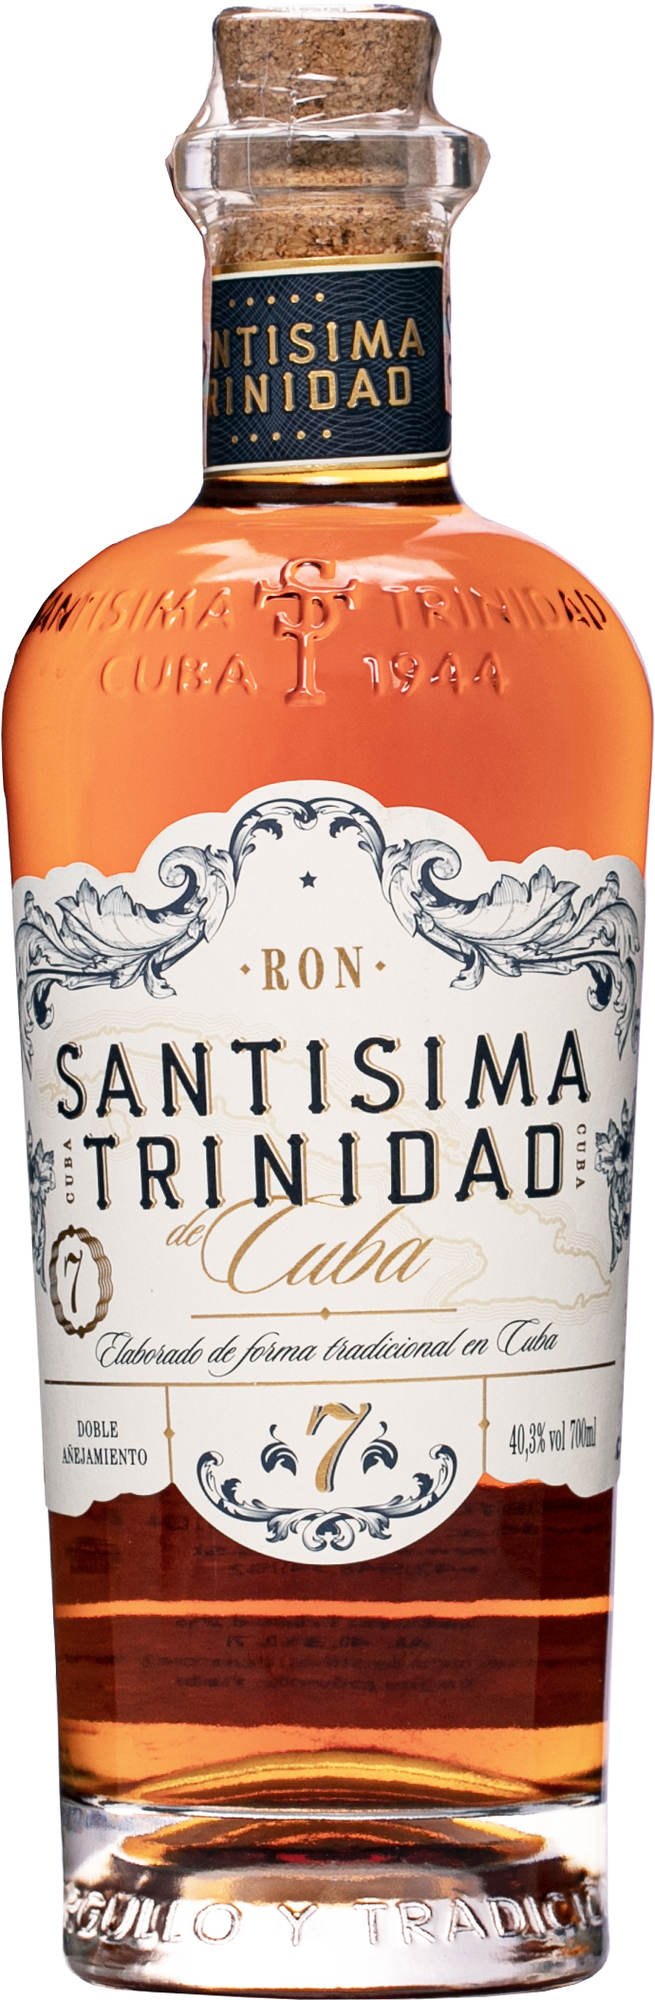 Santisima Trinidad 7 ročný 40,3% 0,7l (čistá fľaša)